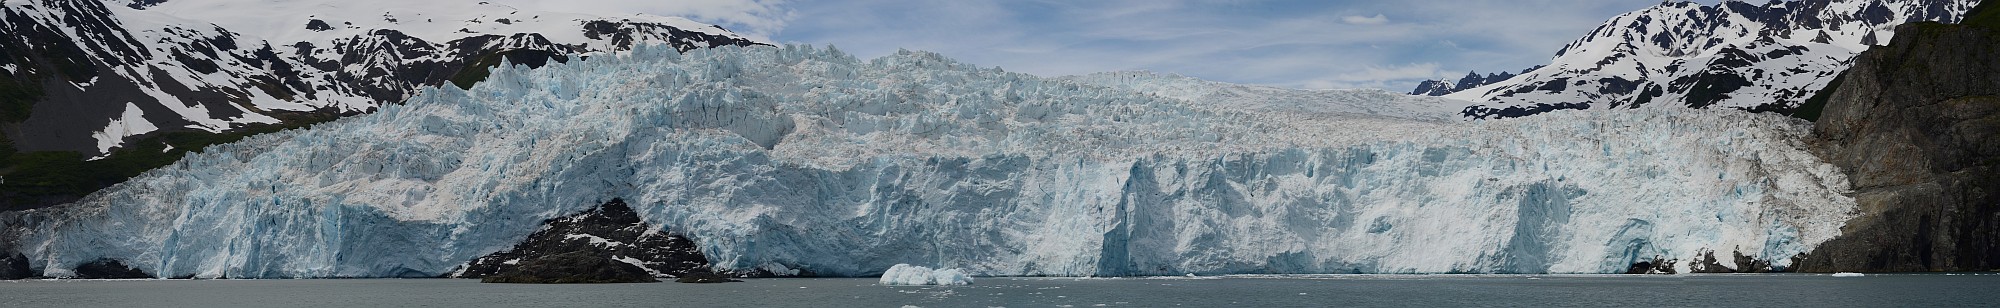 Aialik-Gletscher Panorama